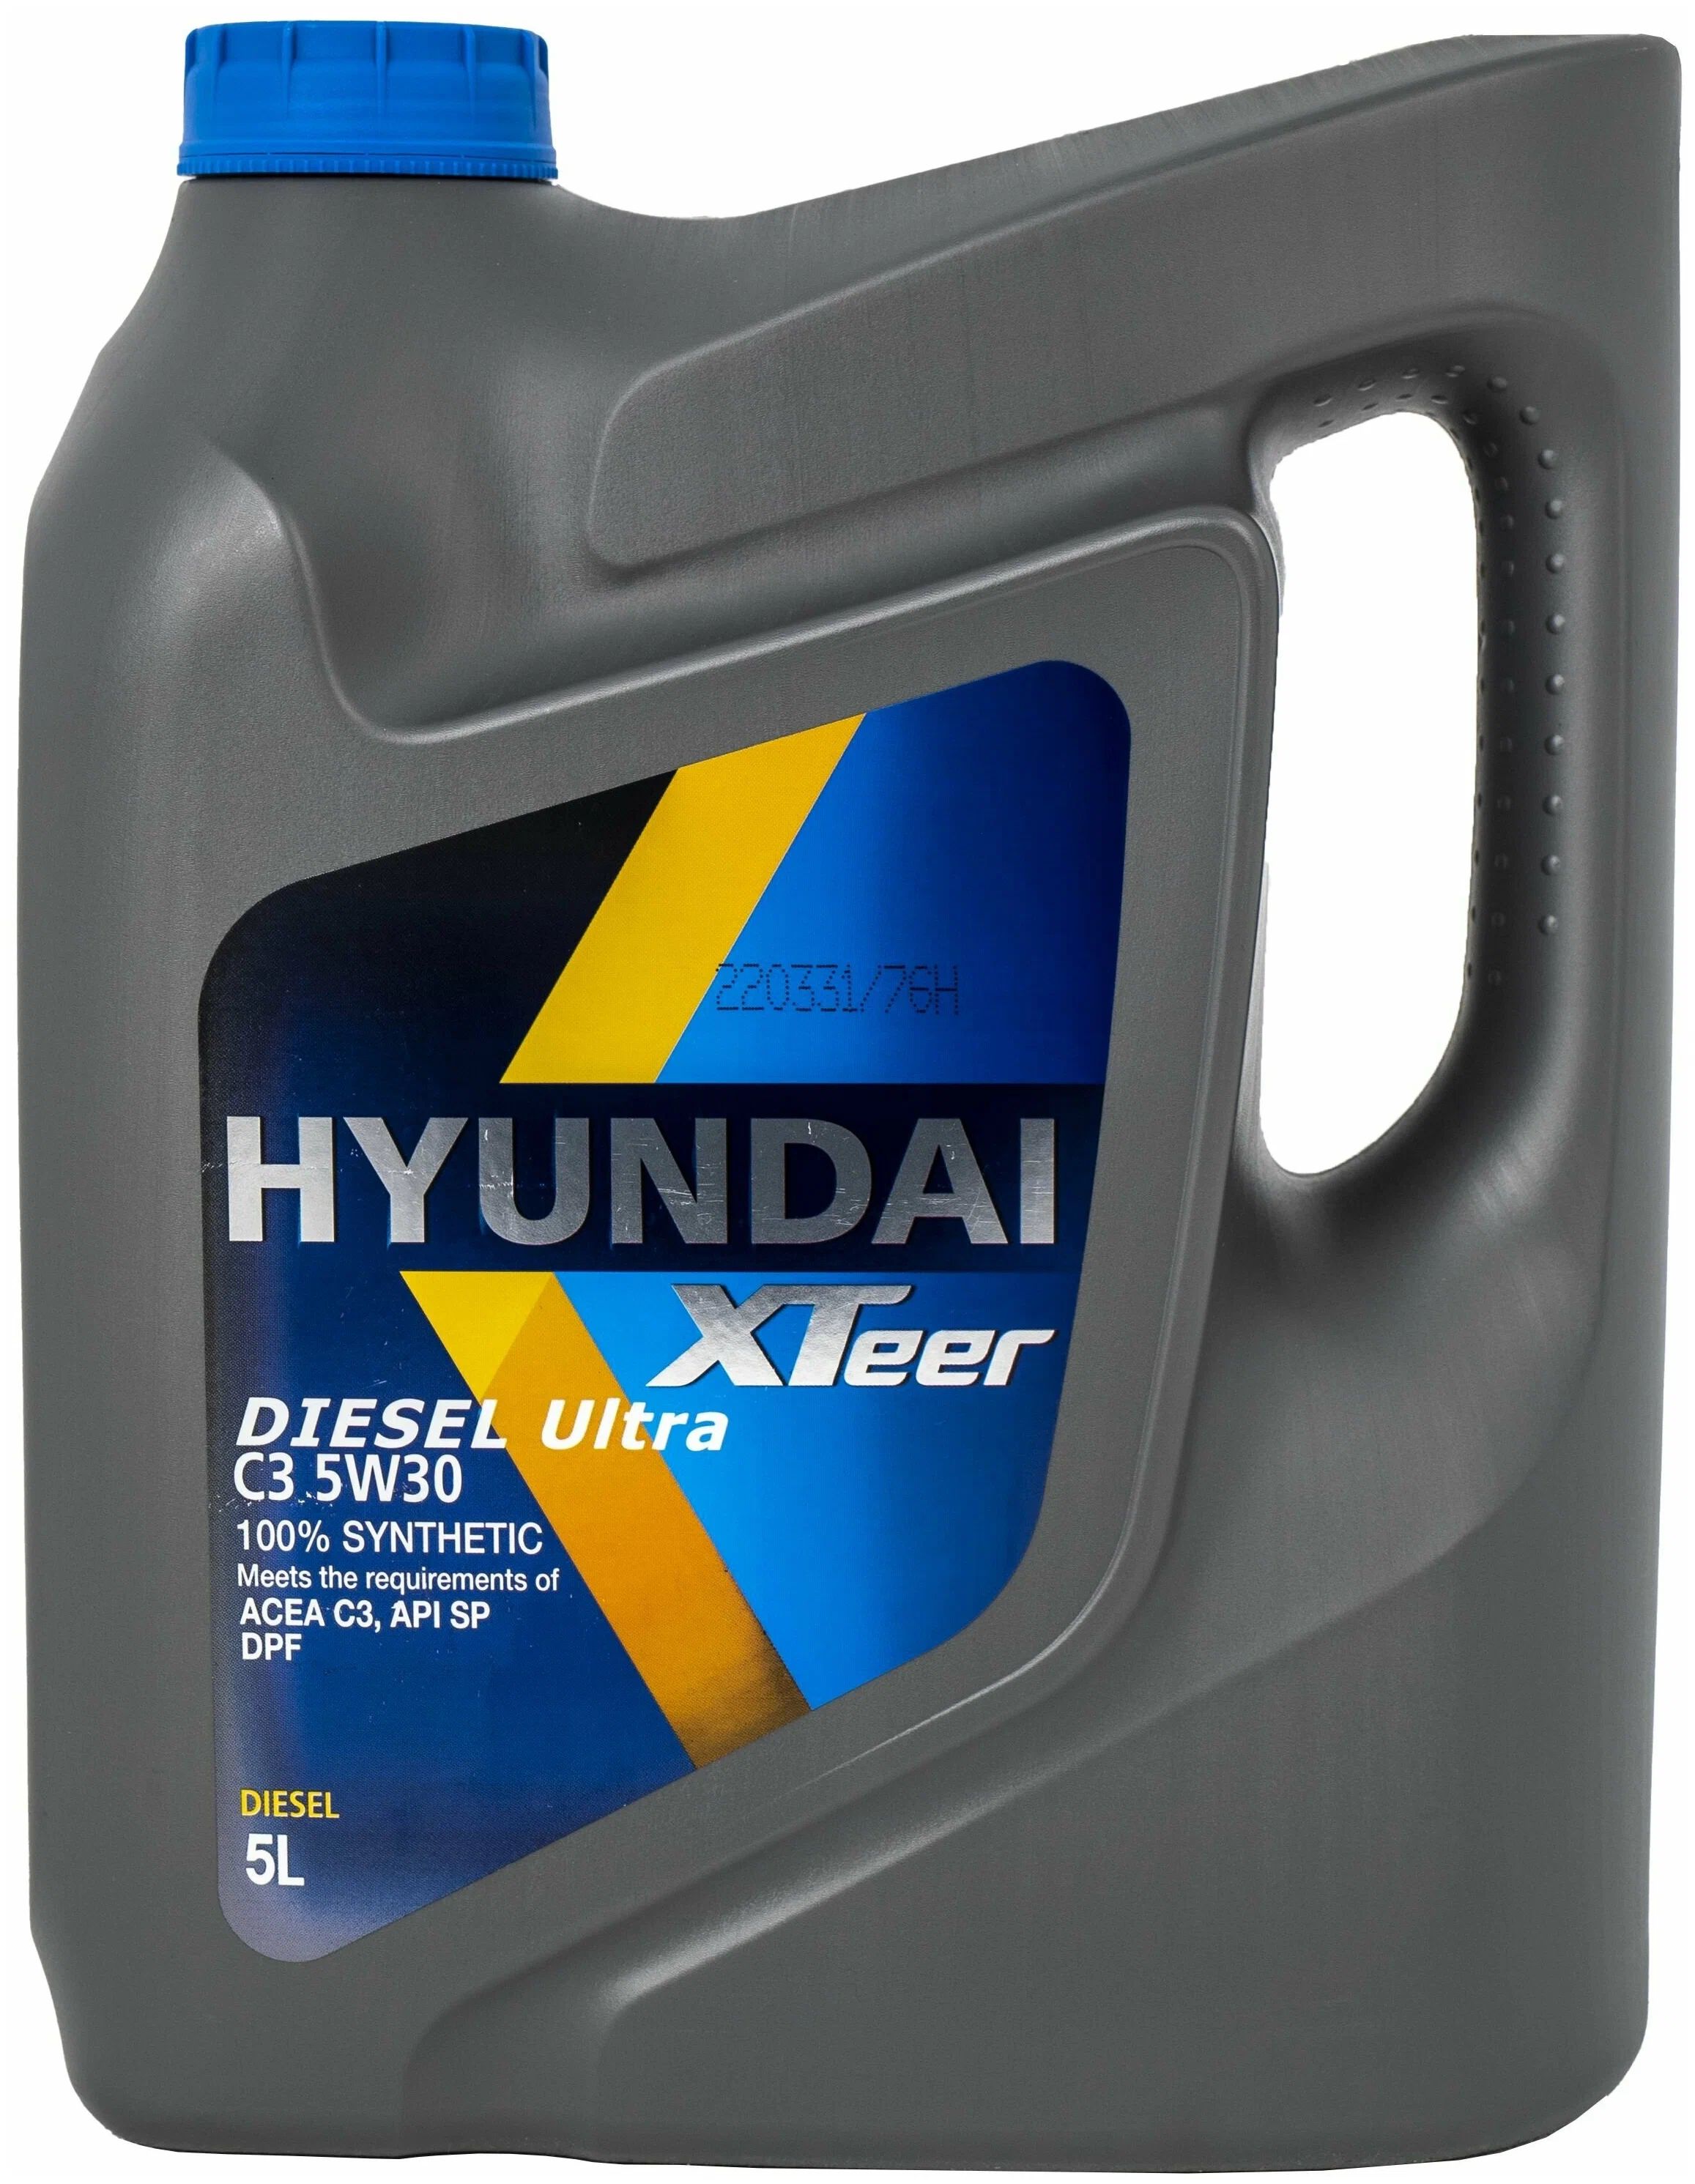 Hyundai XTEER Diesel Ultra c3 5w-30. XTEER Diesel Ultra c3 5w30. Hyundai XTEER Diesel Ultra 5w30. XTEER Diesel Ultra 5w30.